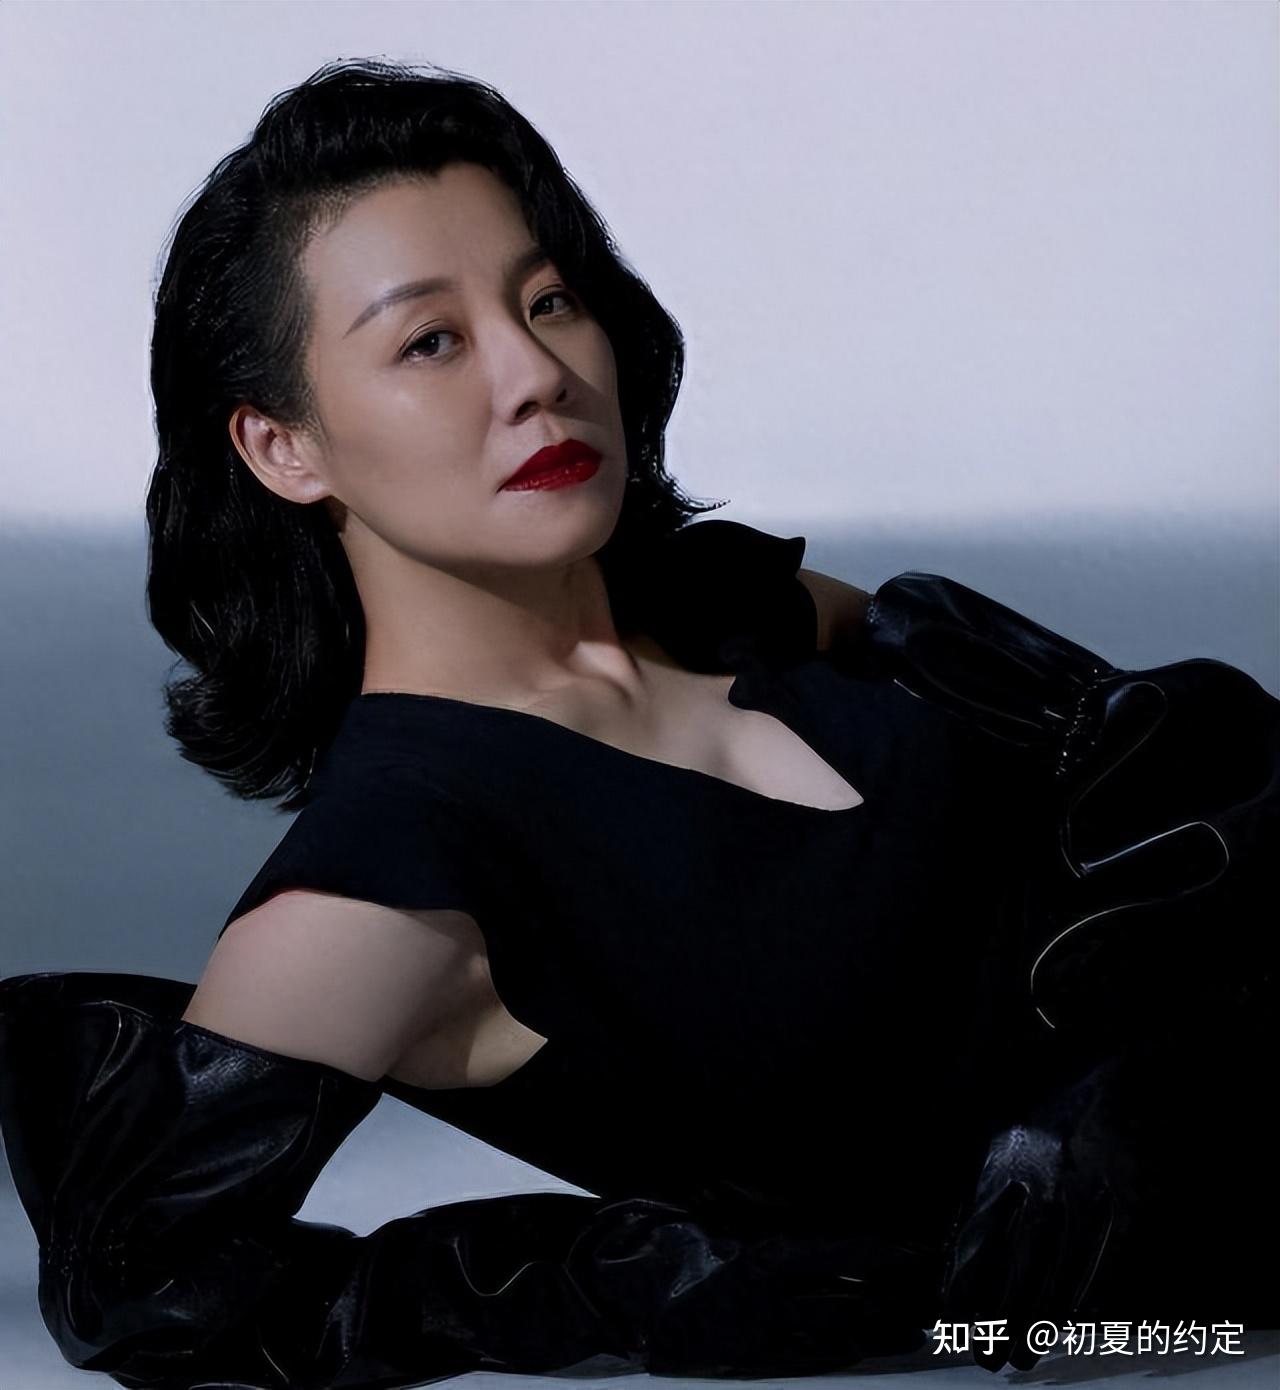 演员刘琳:我这辈子最正确的决定,就是嫁给平凡丈夫,给他生儿子